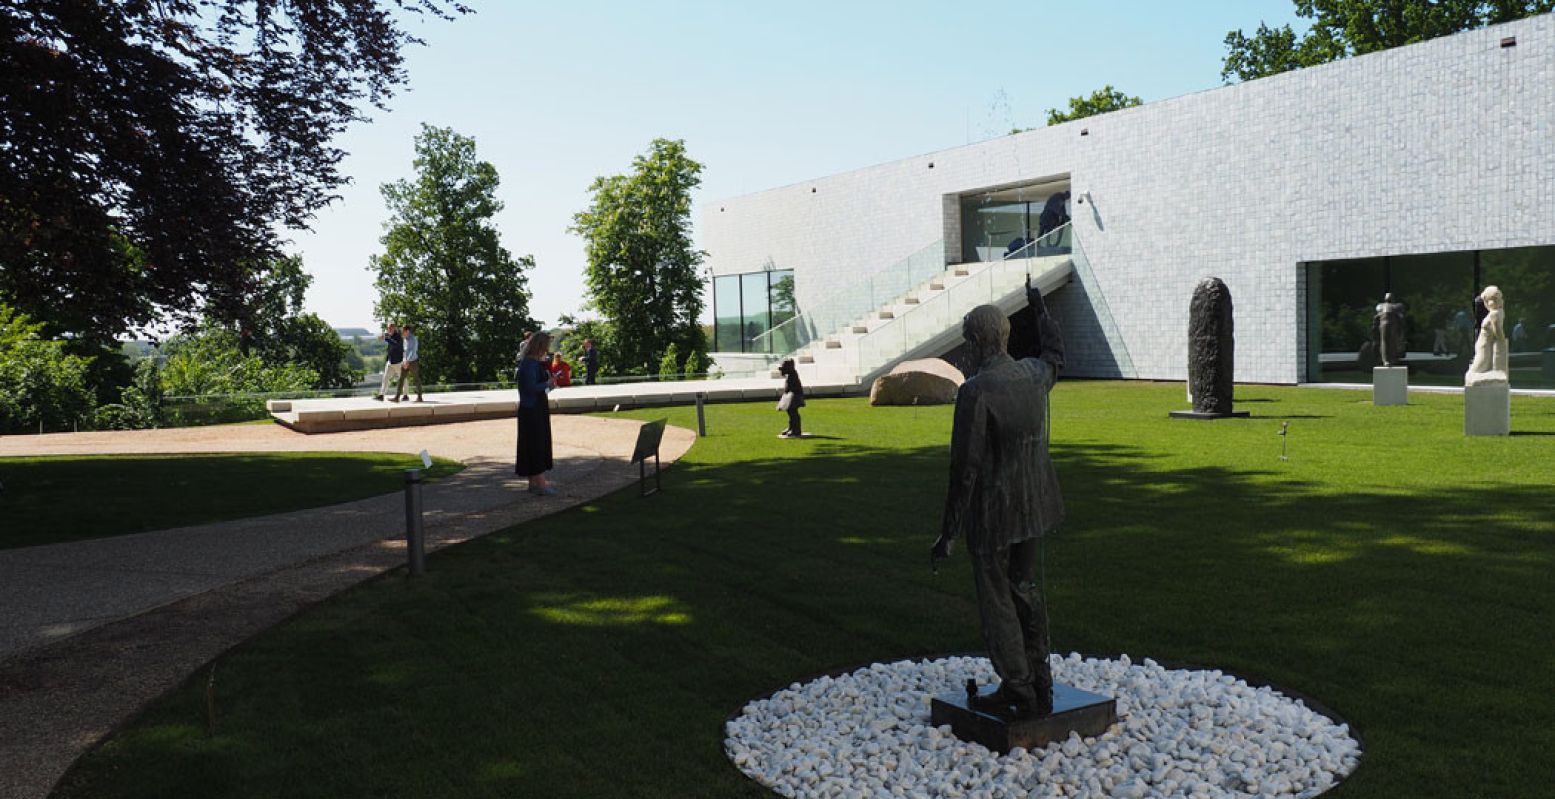 Het vernieuwde Museum Arnhem met een nieuwe vleugel en beeldentuin. Foto: DagjeWeg.NL